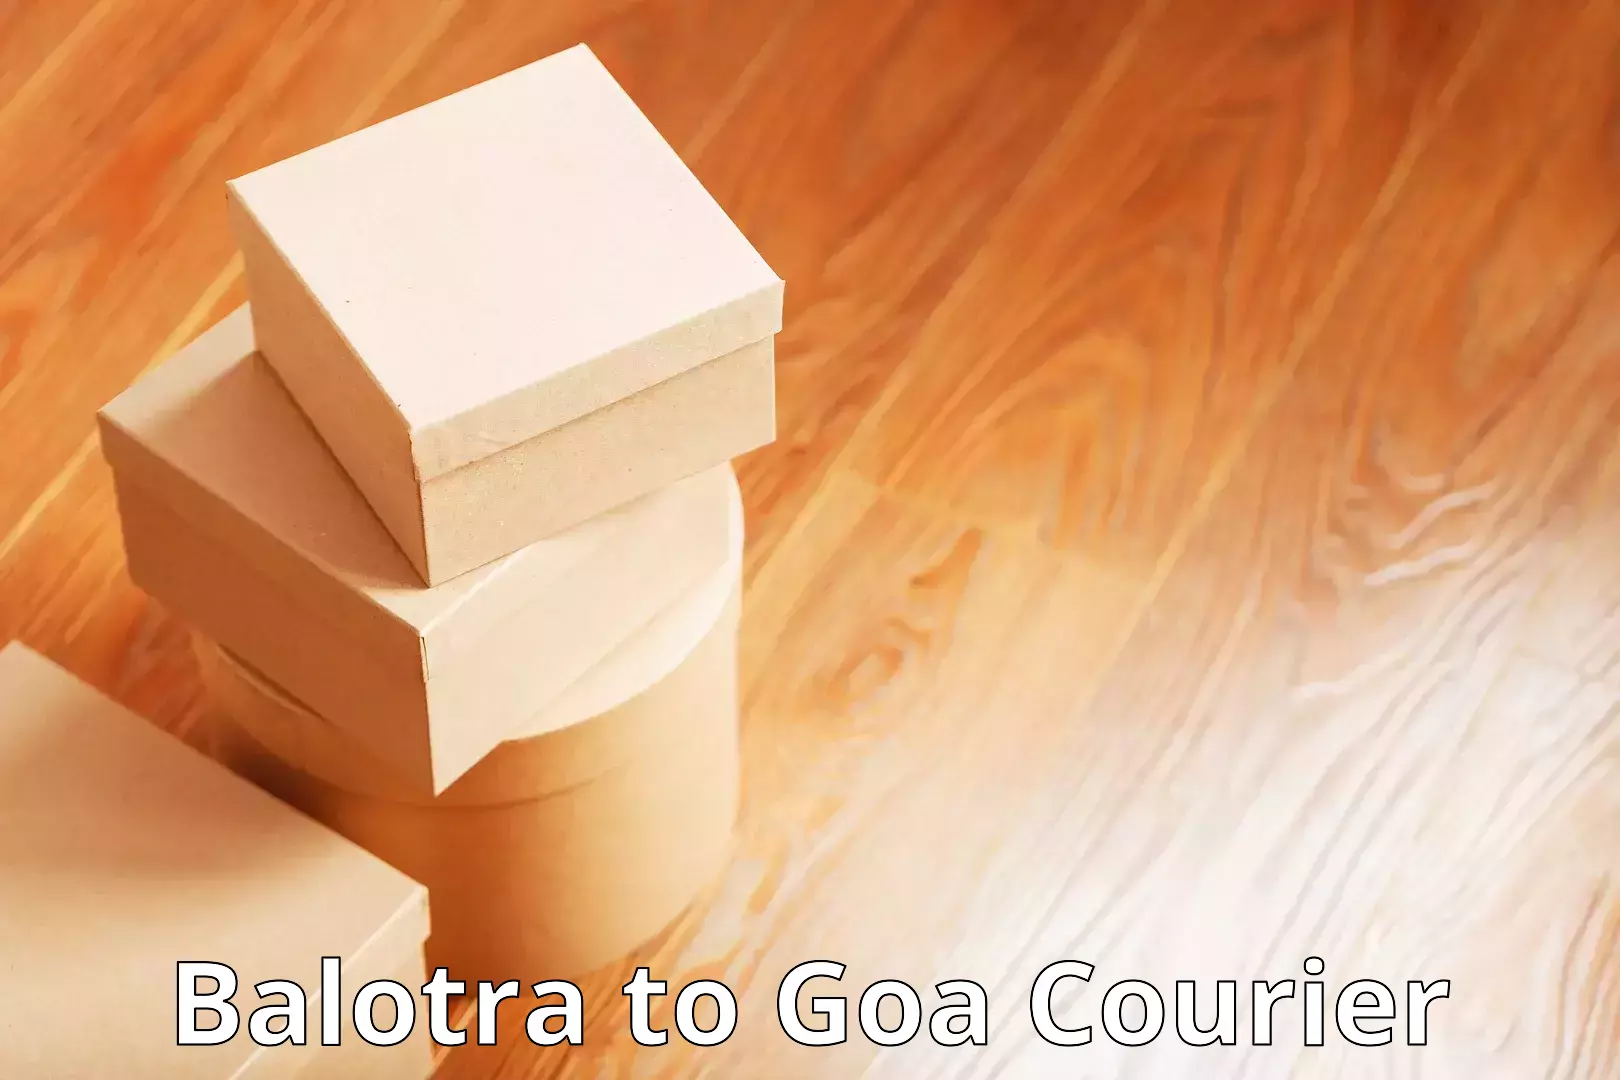 Next day courier Balotra to Goa